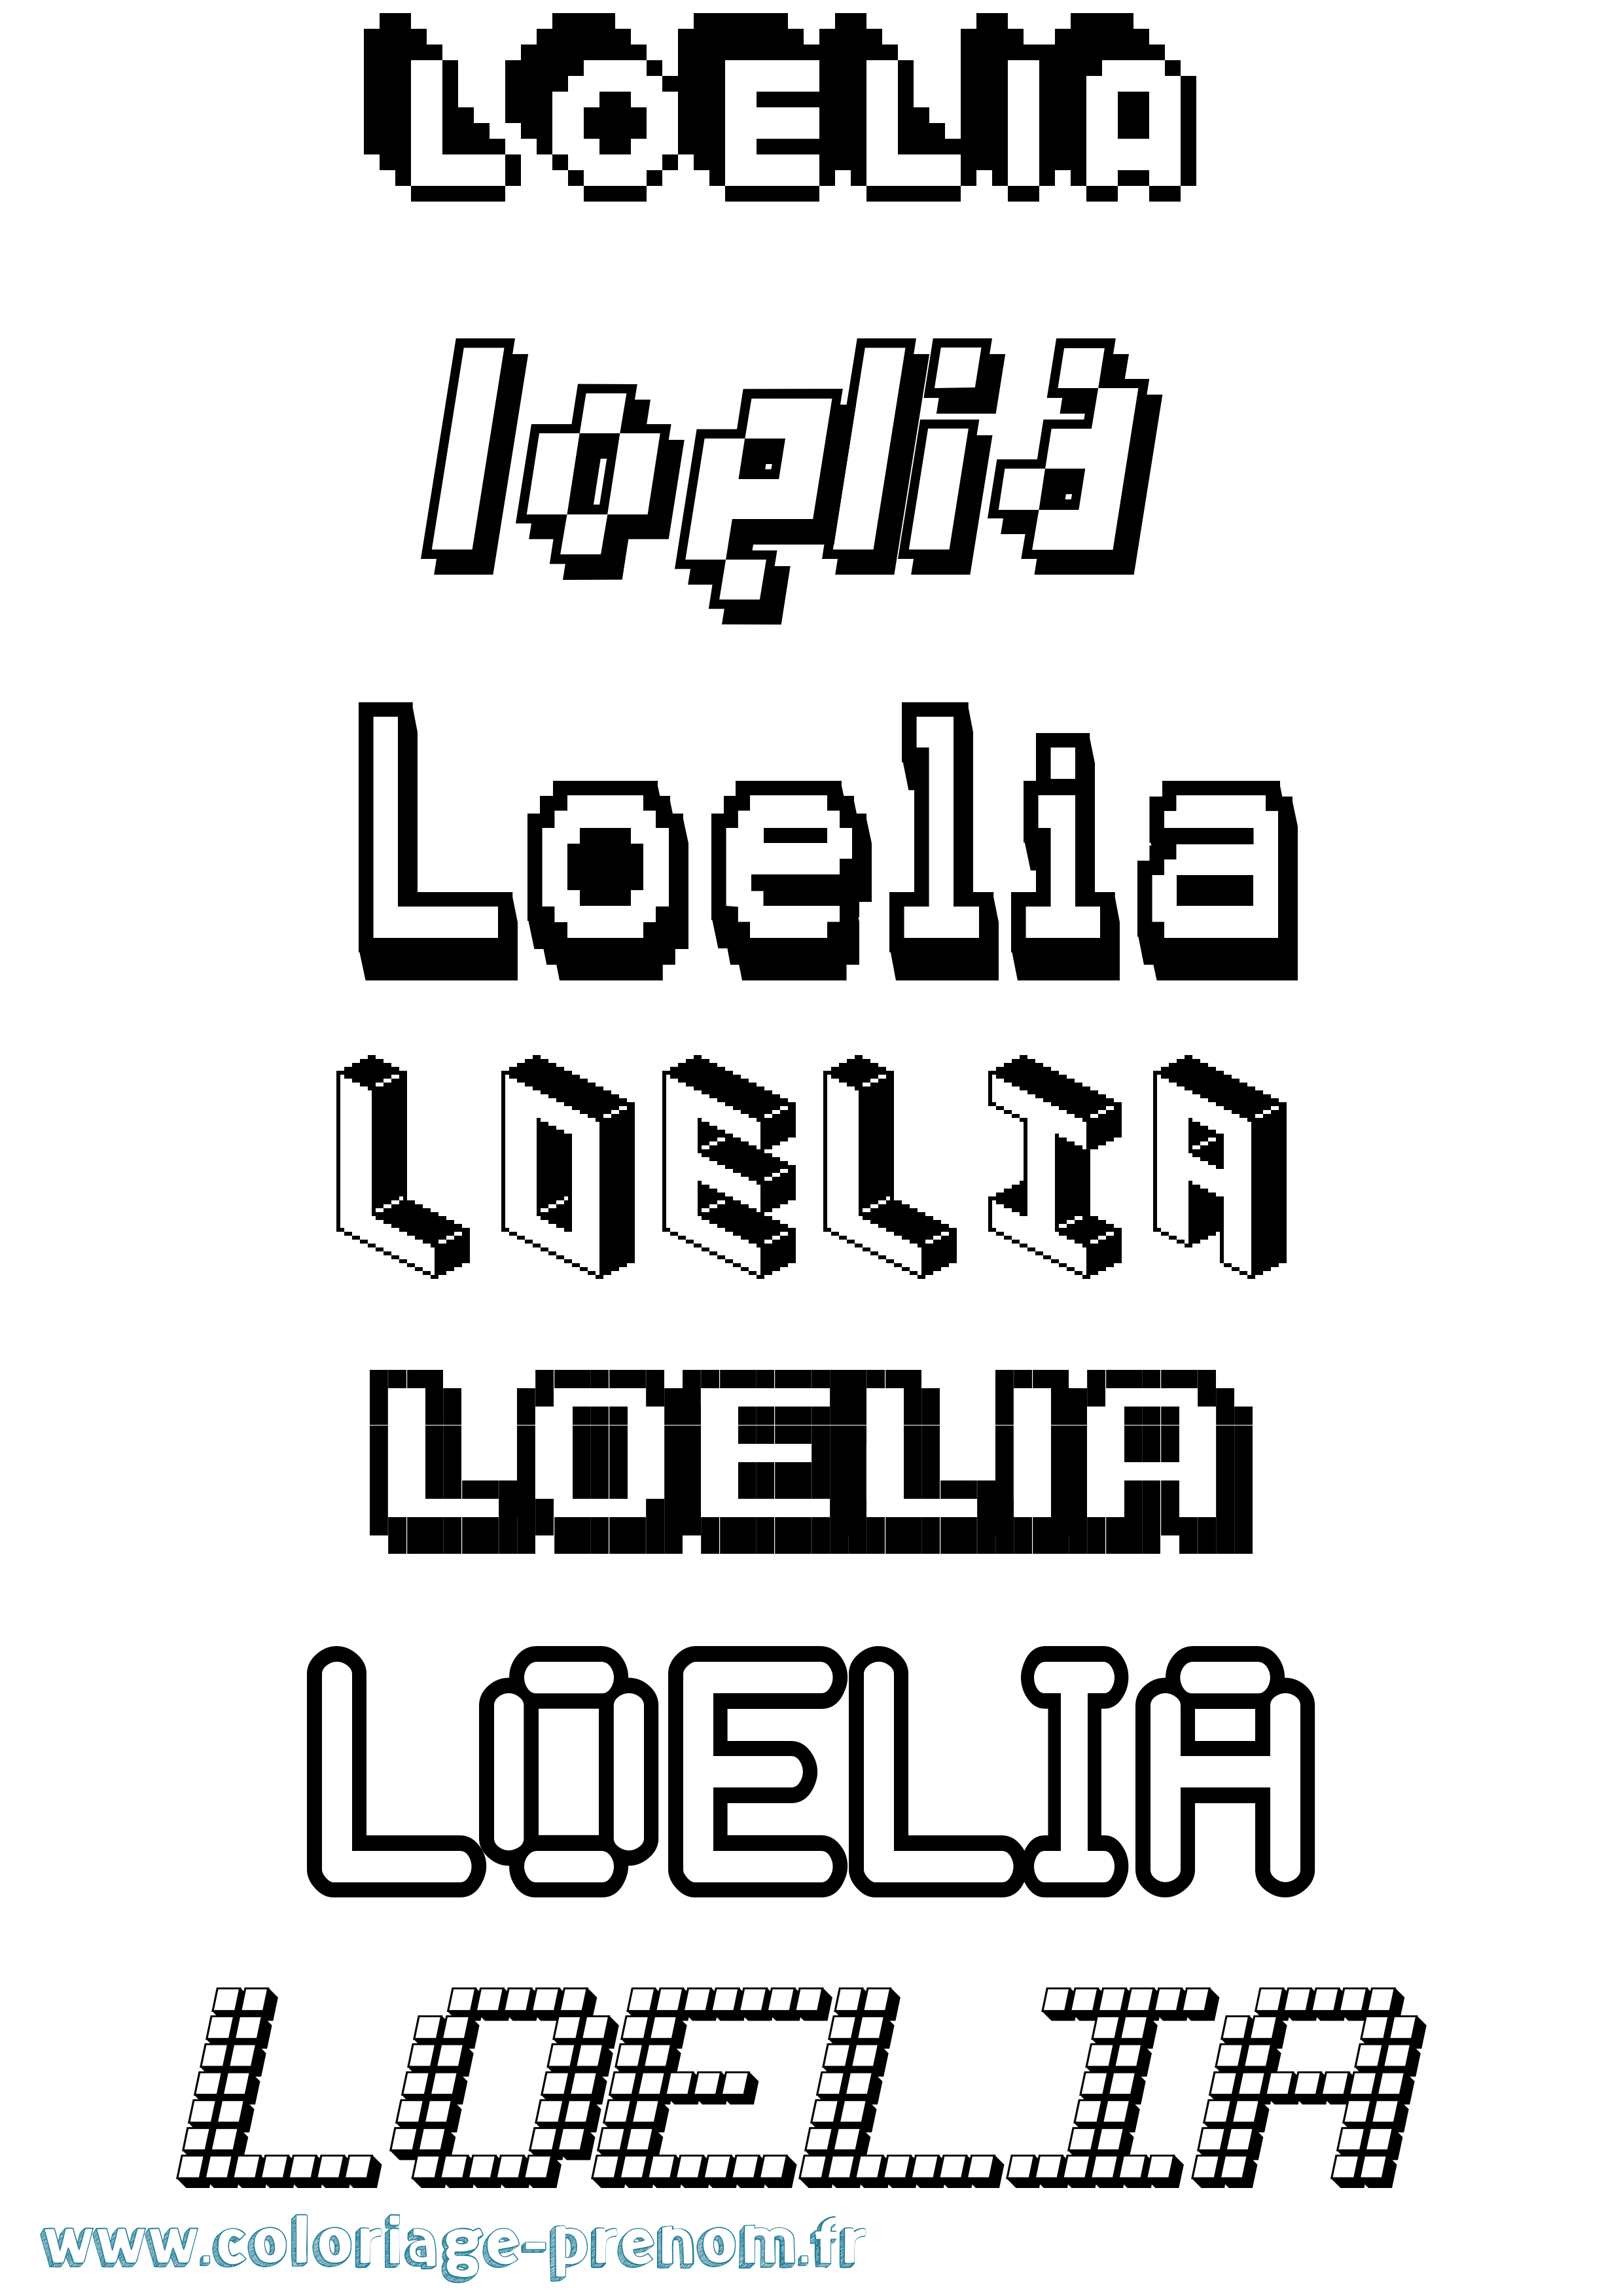 Coloriage prénom Loelia Pixel